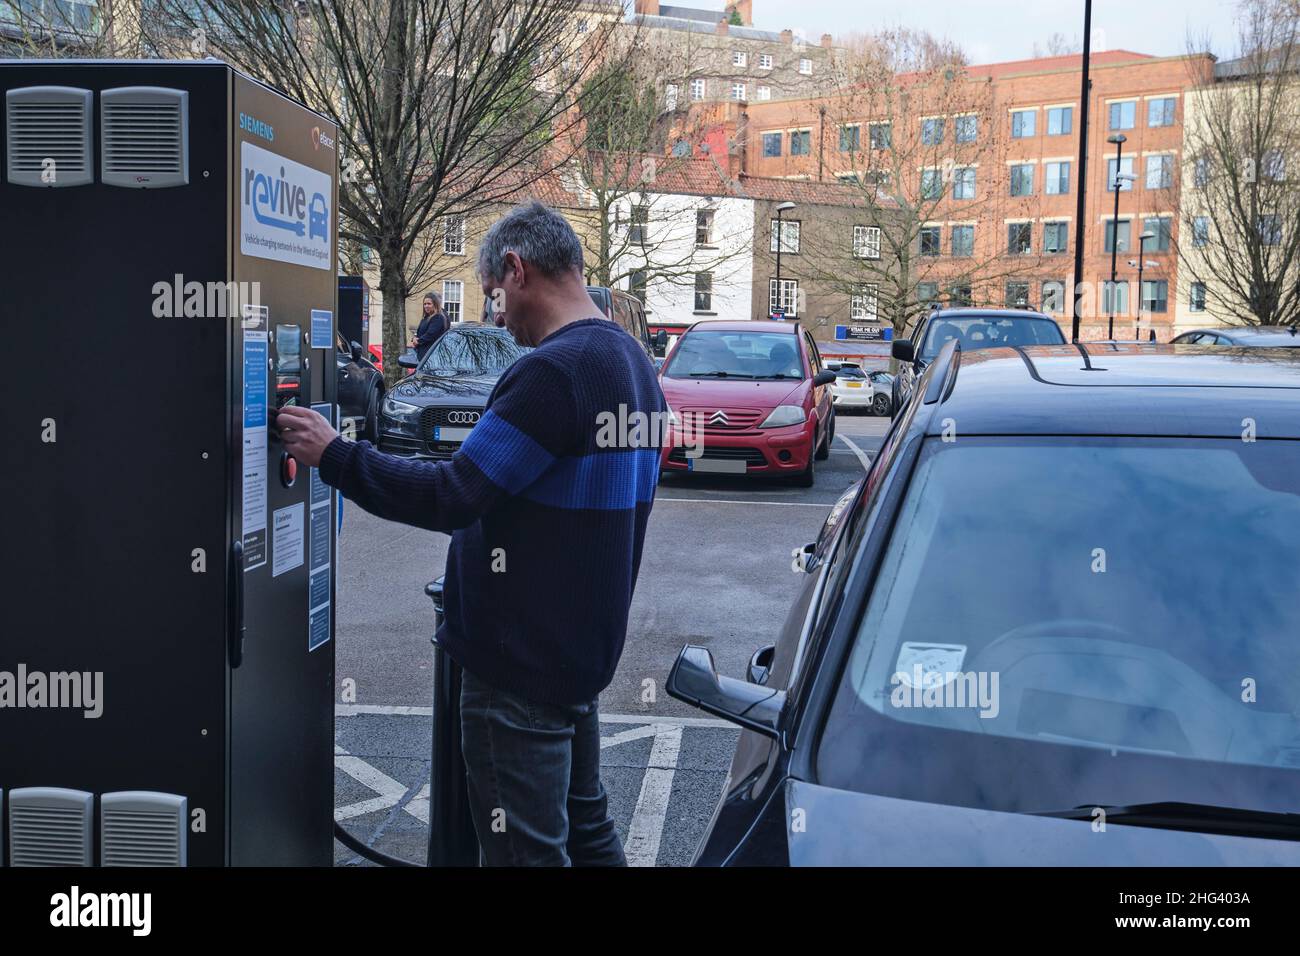 Le conducteur paie pour charger sa voiture à un point de recharge EV à bristol, en Angleterre Banque D'Images